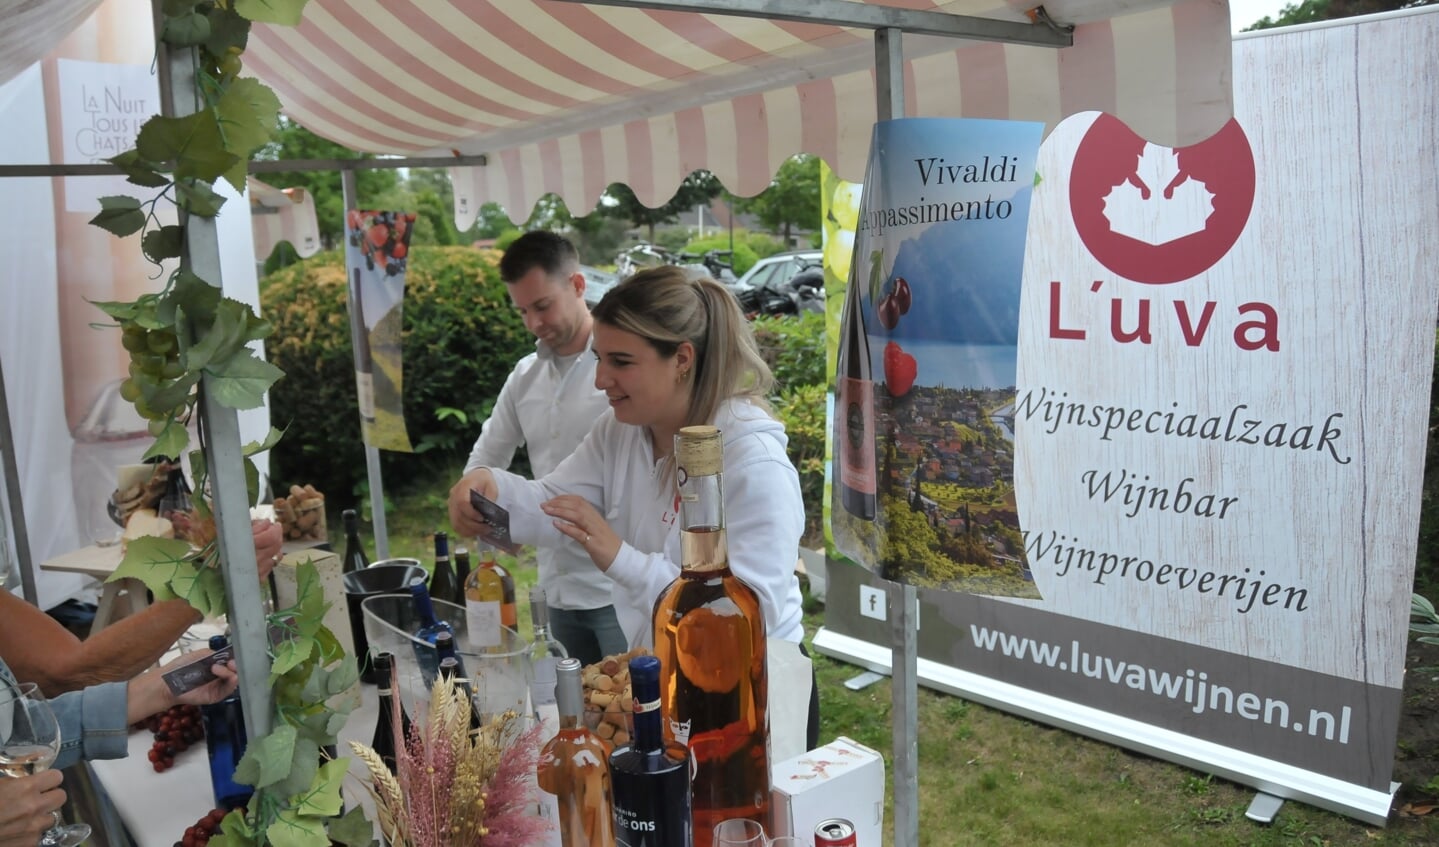 Wijnfestival valt in de smaak bij de bezoekers